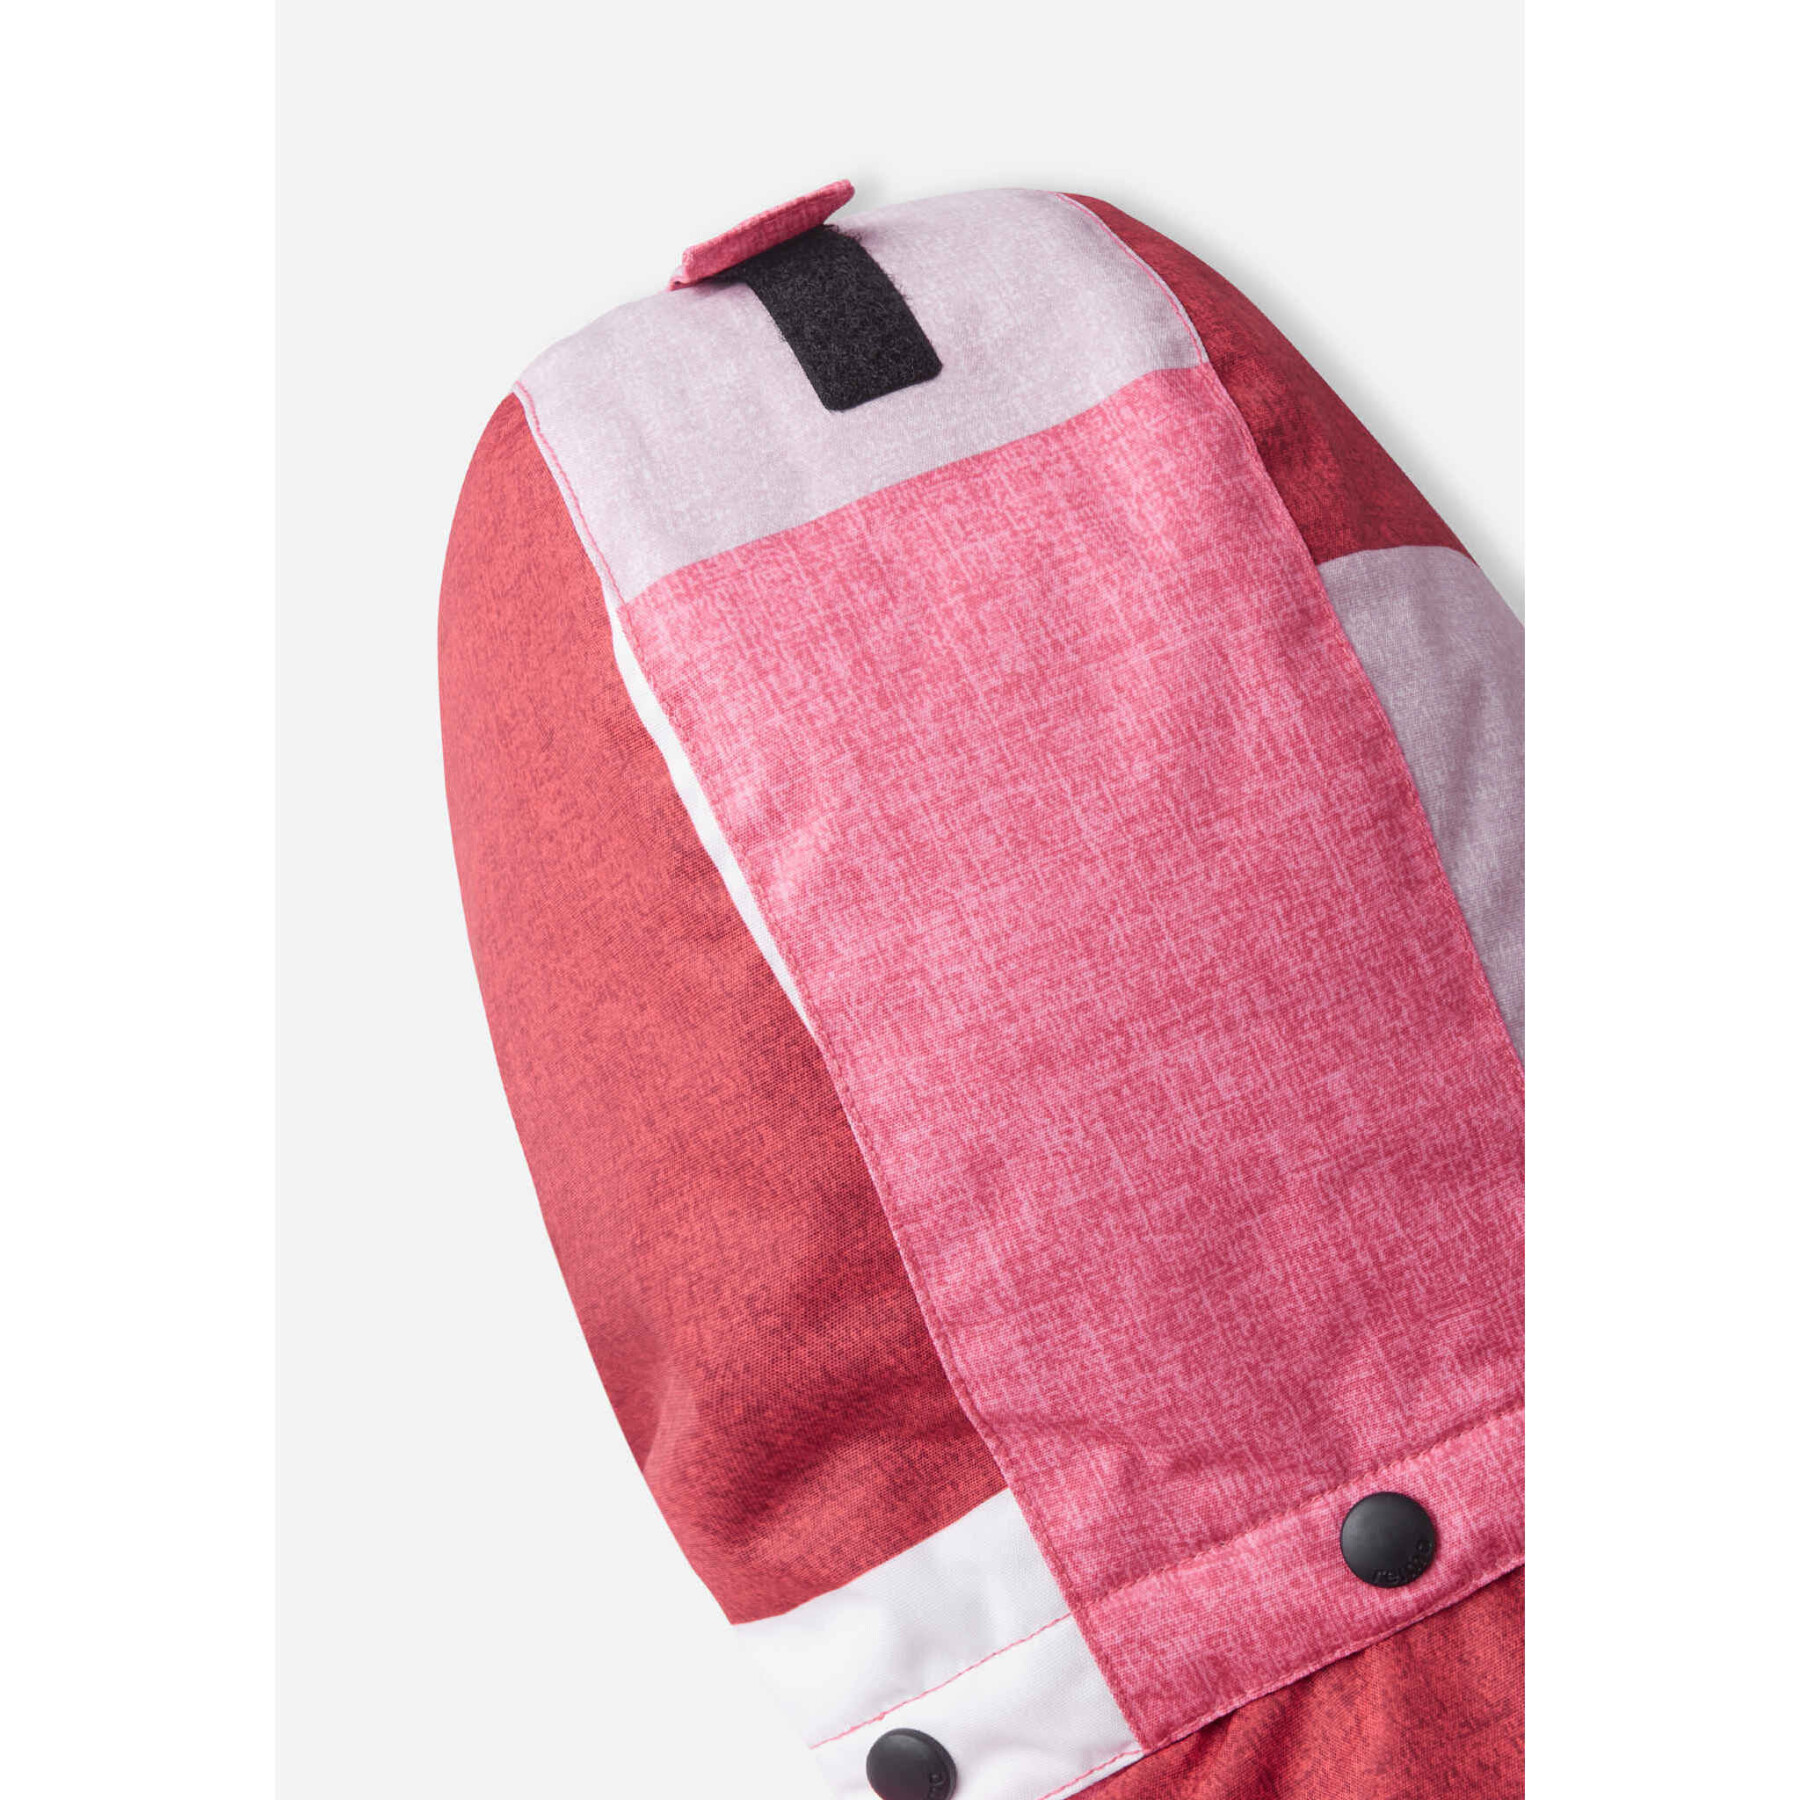 Waterproof jacket for children Reima Kanto